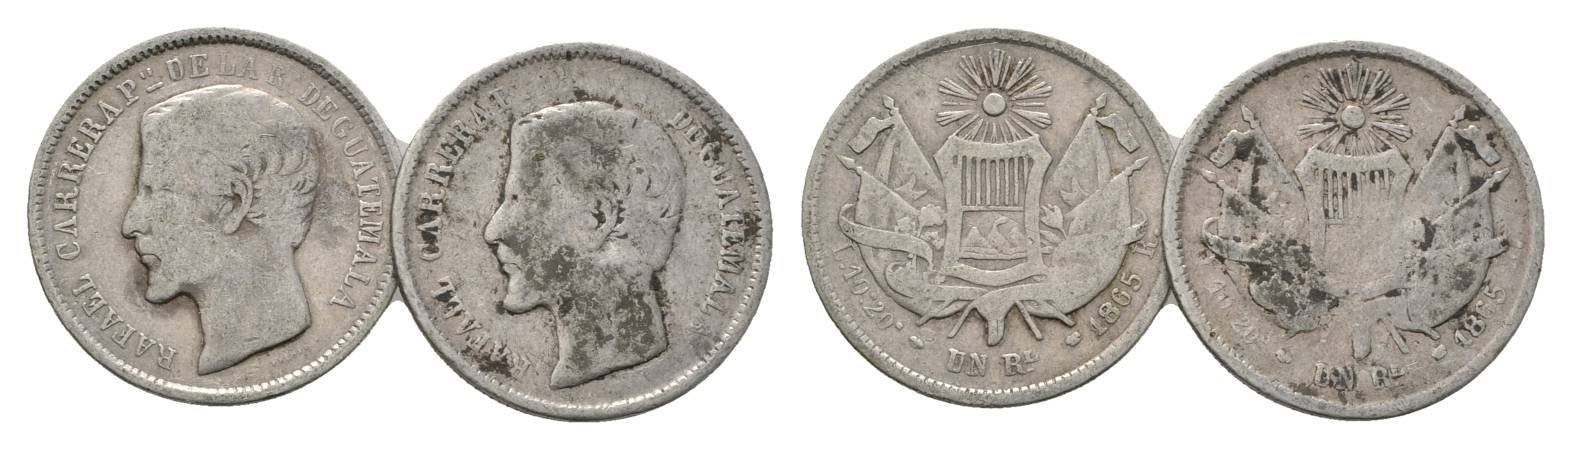  Guatemala, 1 Real 1865   